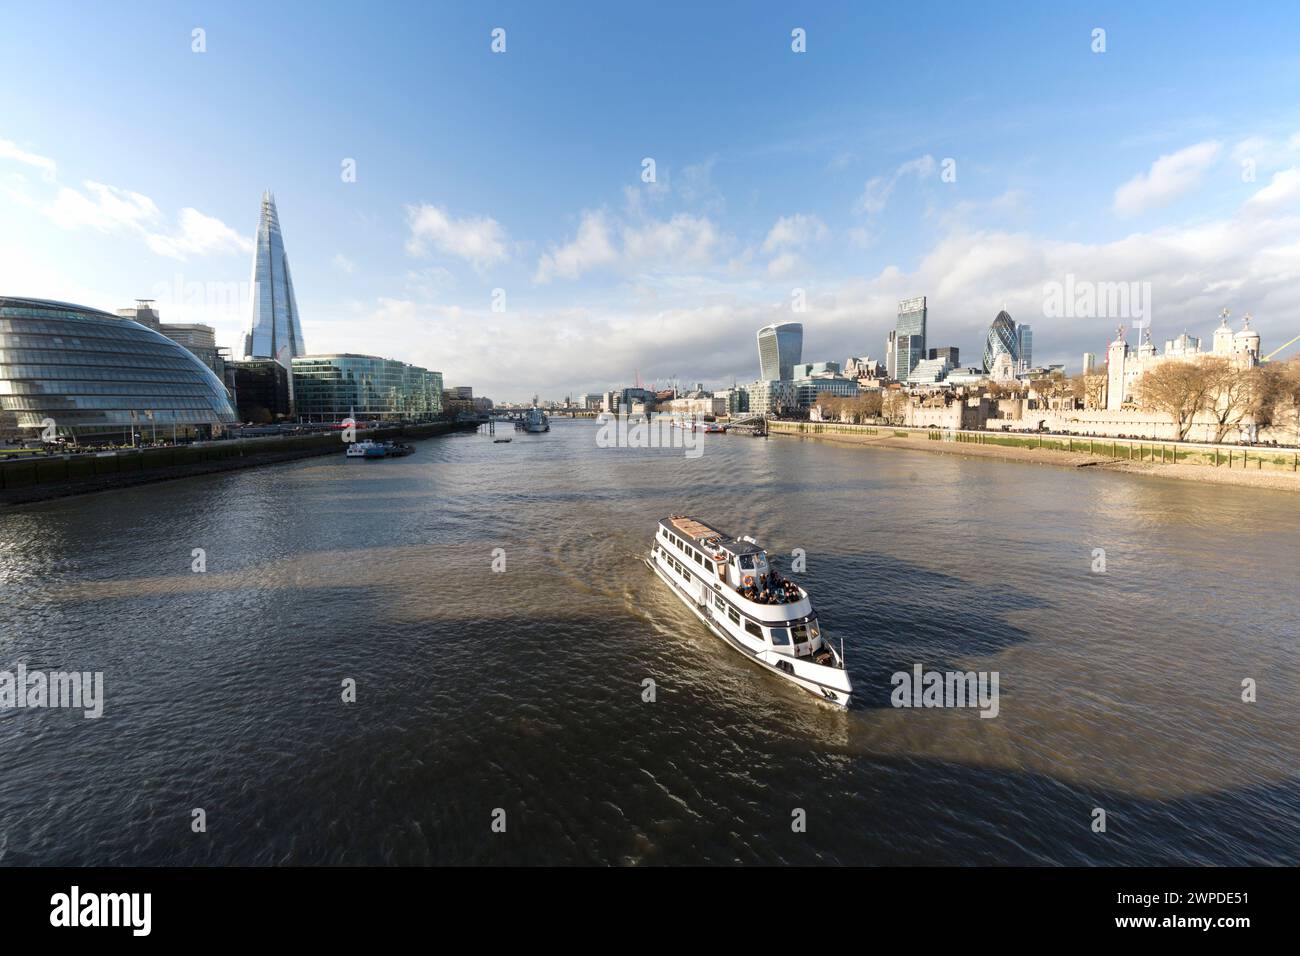 Regno Unito, Londra, barca turistica che naviga sul Tamigi con l'iconico skyline della città. Foto Stock